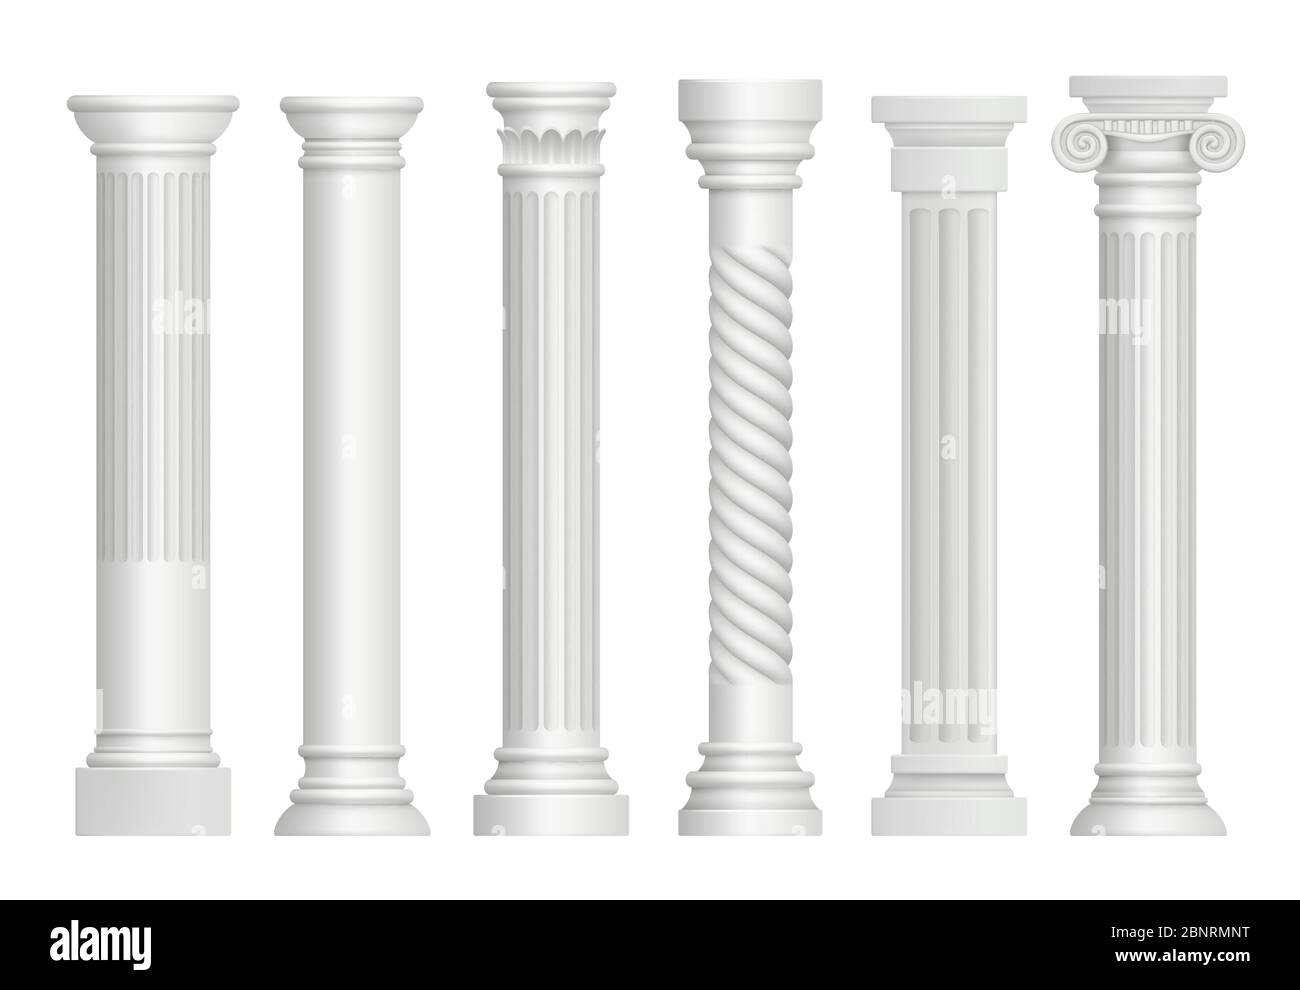 Piliers anciens. Les colonnes classiques de rome grecque historique représentent des illustrations réalistes Illustration de Vecteur